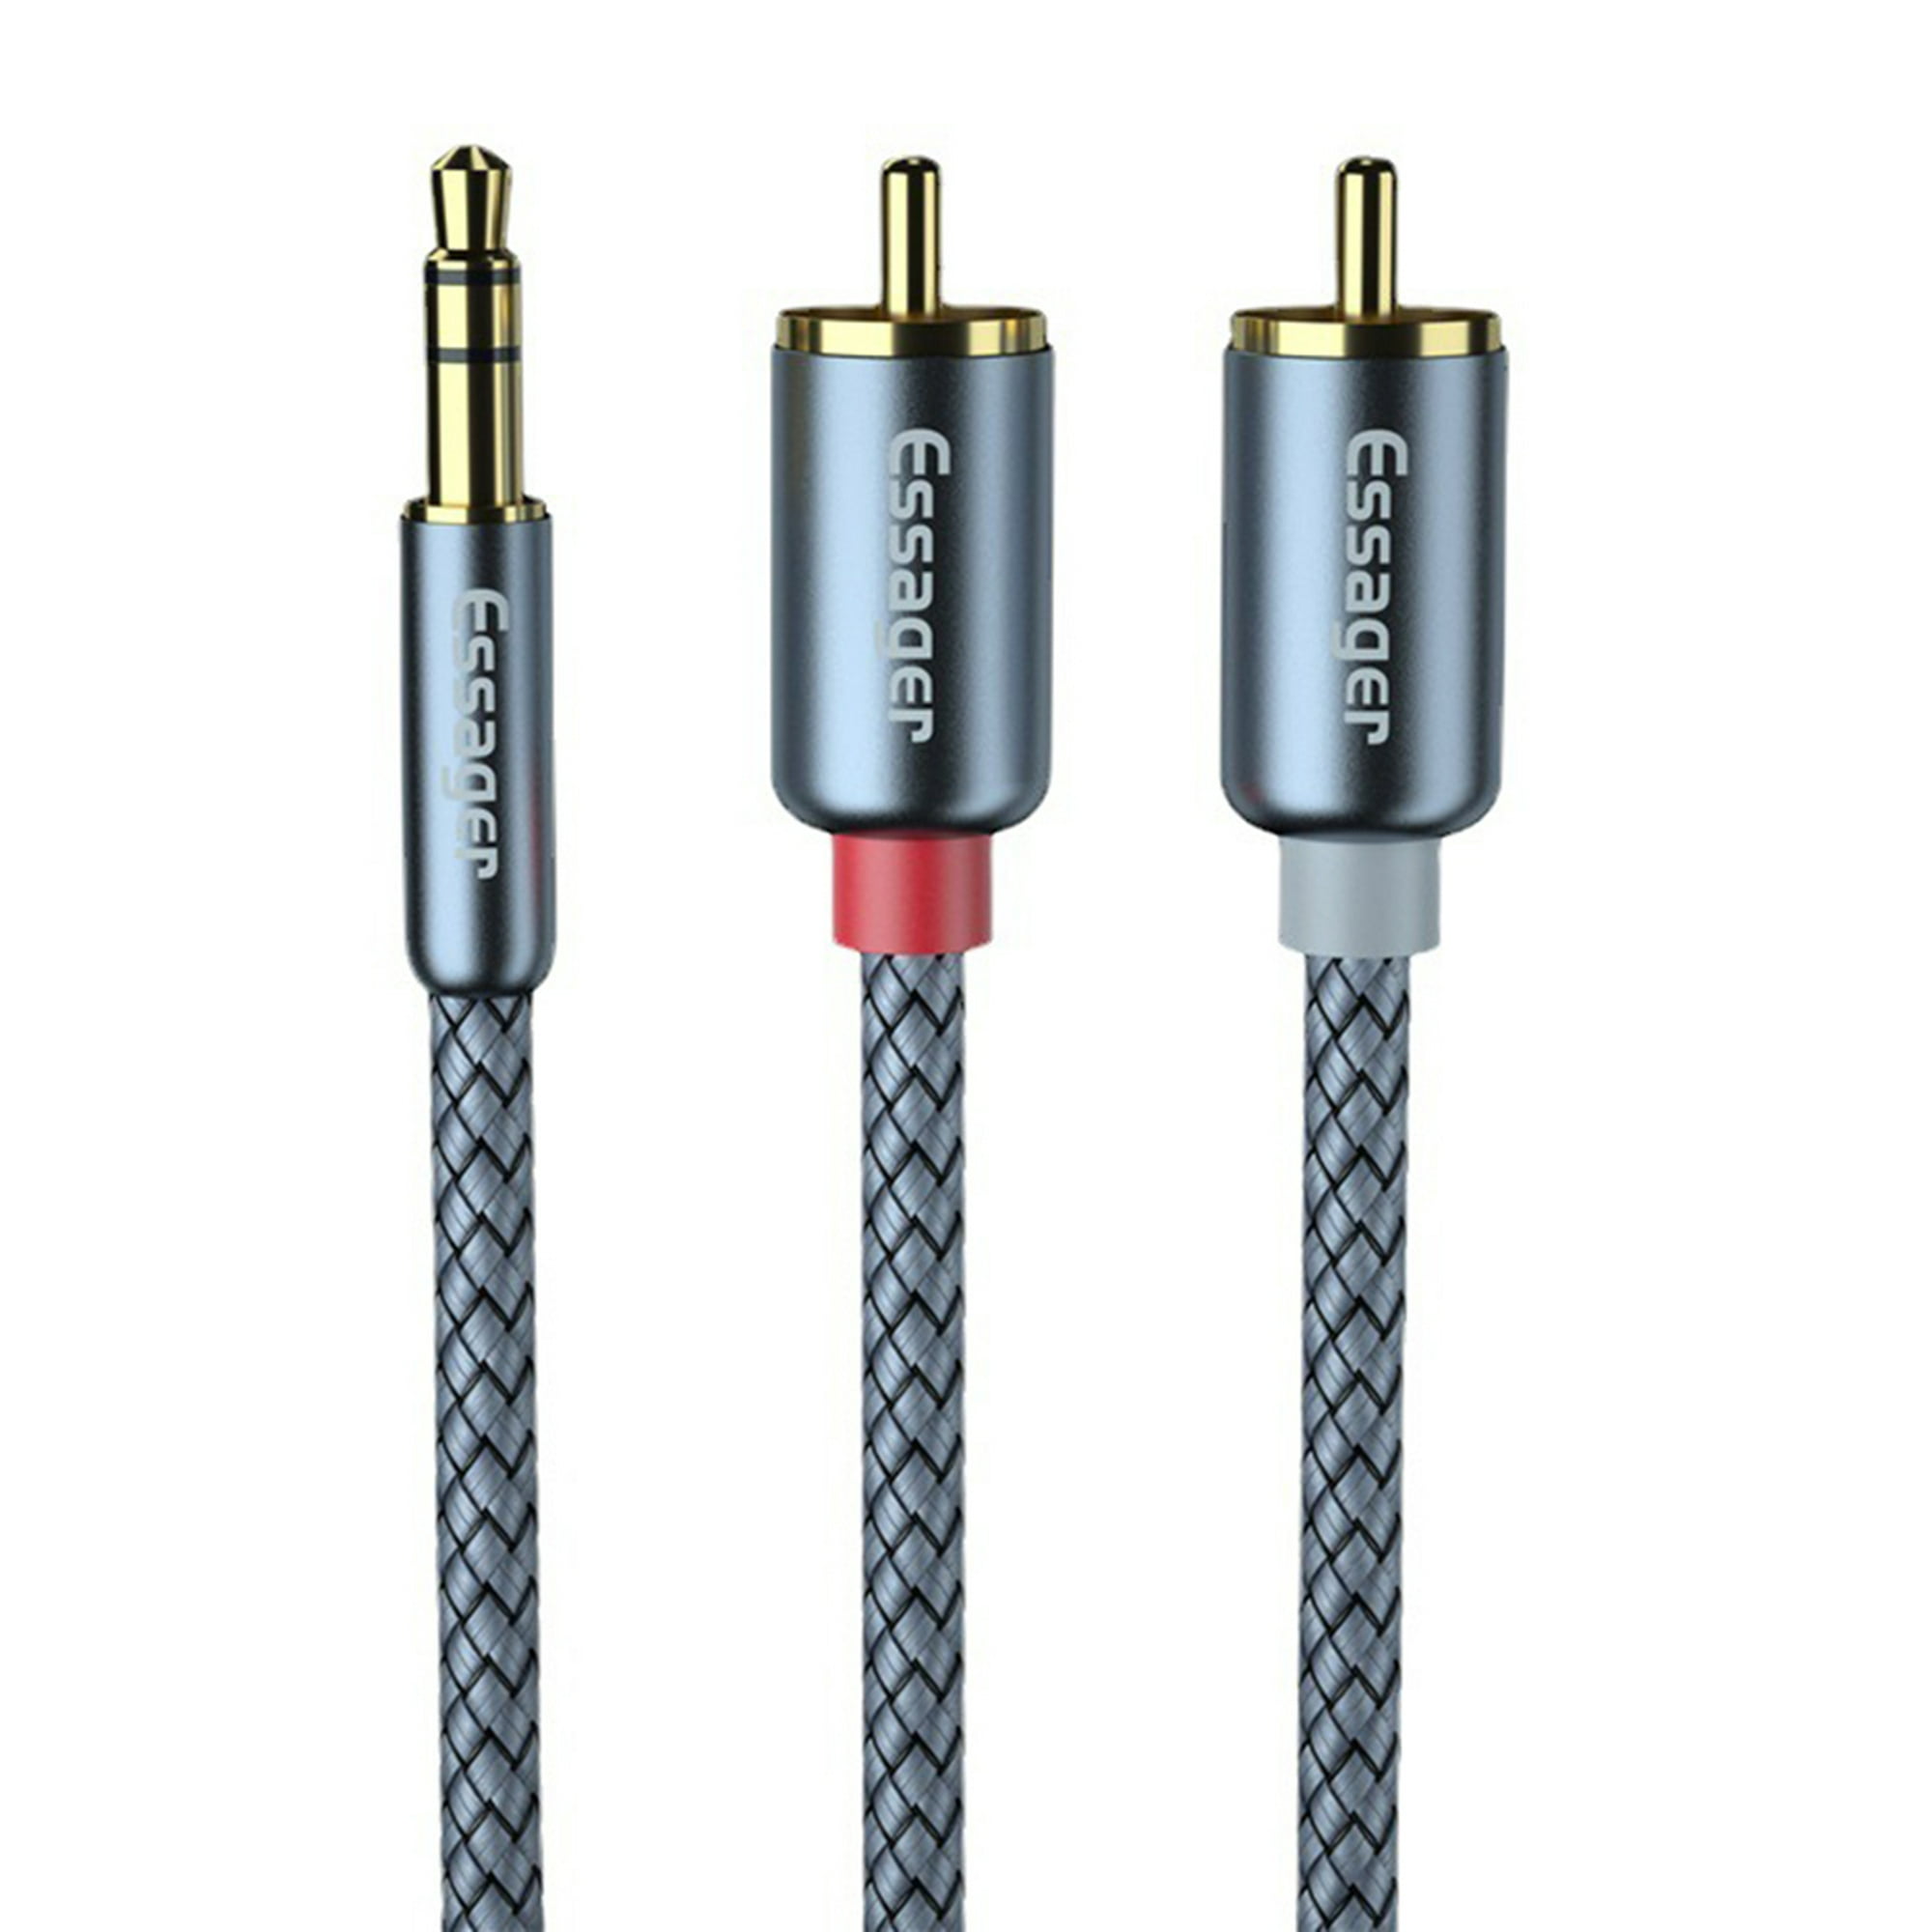 Comprar Essager Cable auxiliar Cable de altavoz Cable de Audio